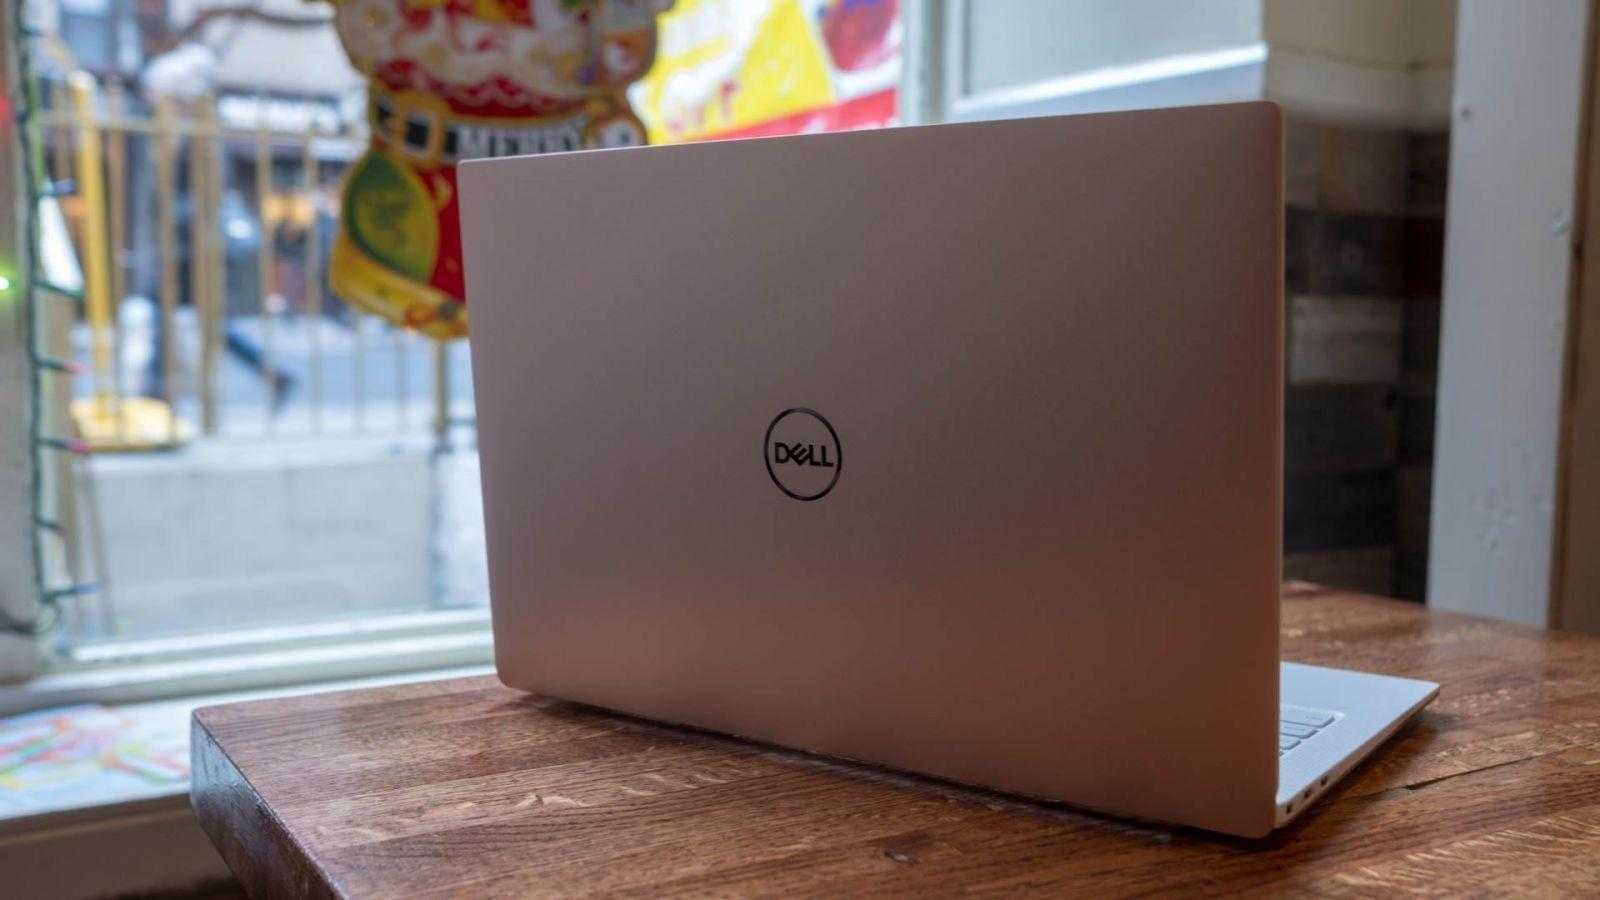 Dell анонсировала ноутбук XPS13 с 4K и процессором Intel 10-го поколения ()